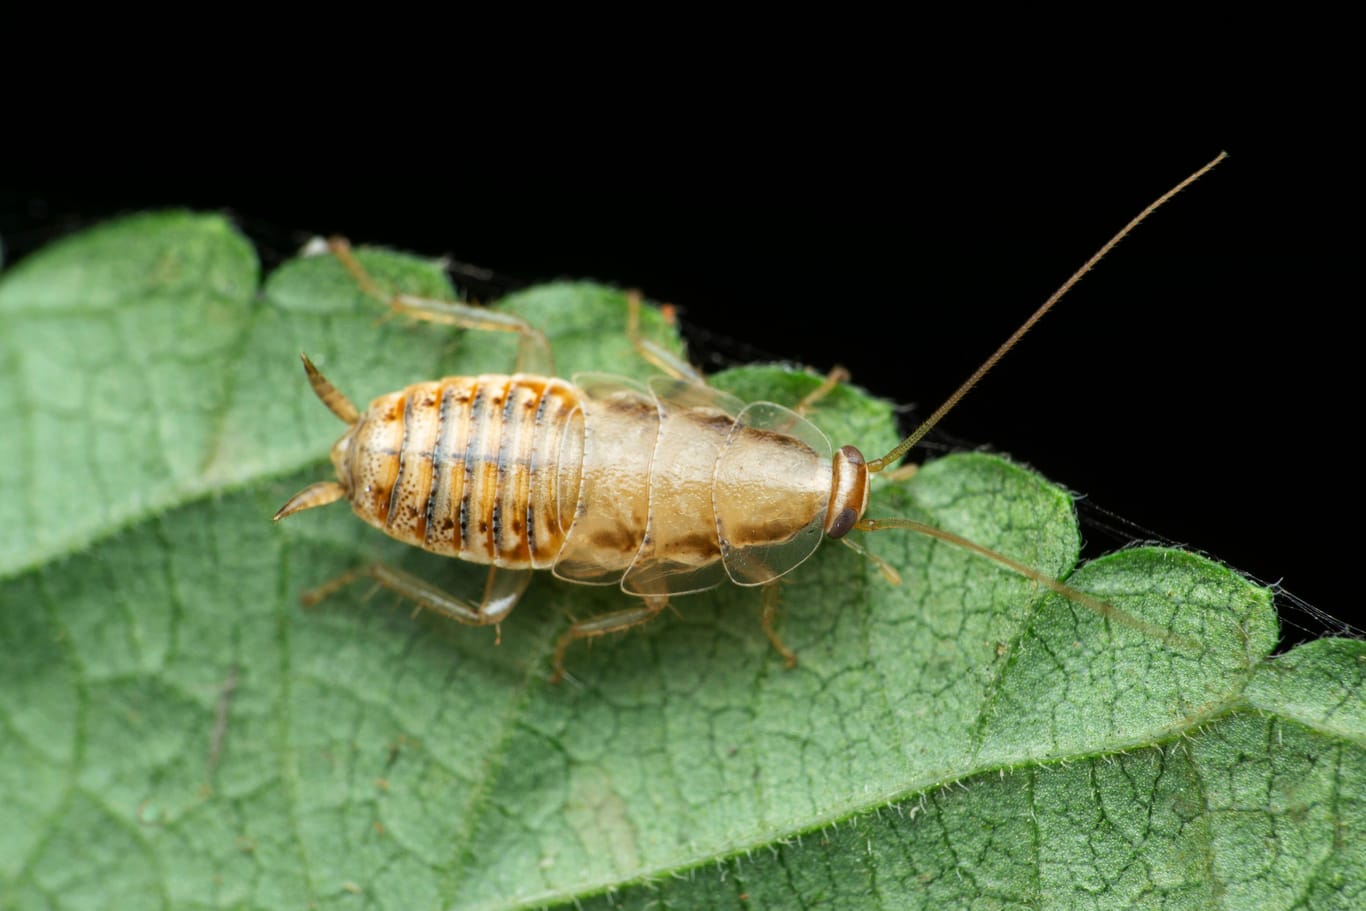 Nymph of cockroach, Satara, Maharashtra, India